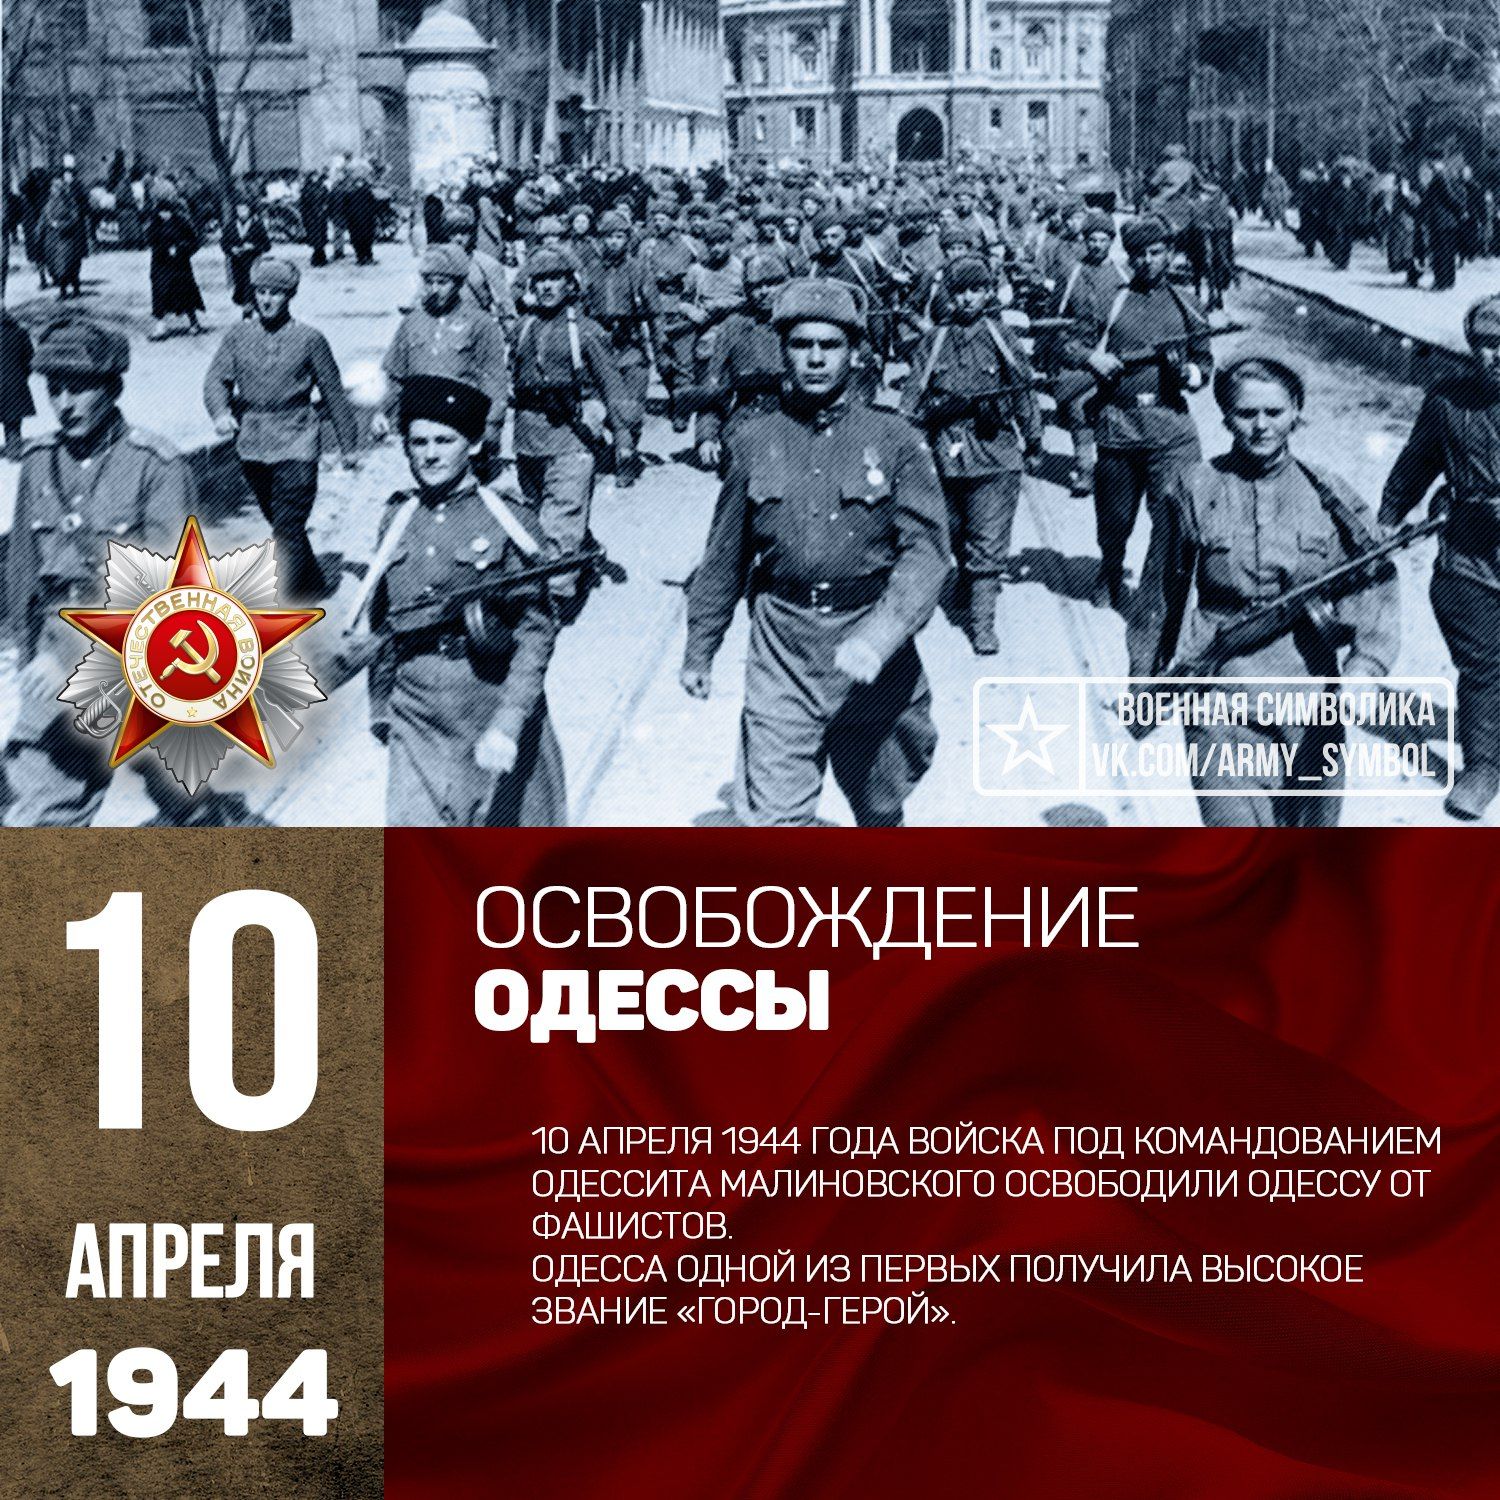 Освобождение Одессы от немецко-фашистских захватчиков.